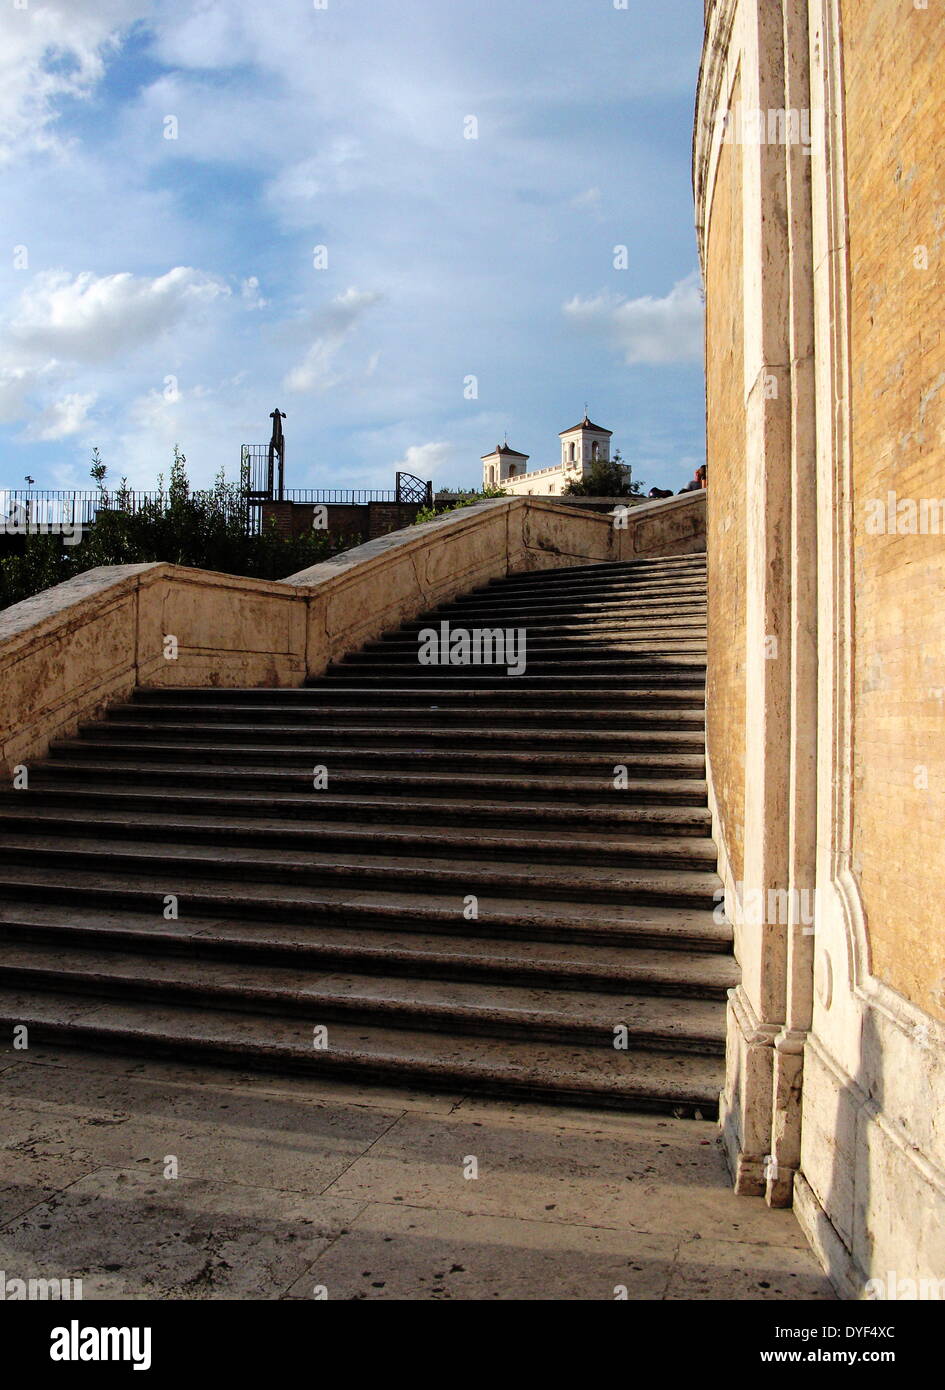 La place d'Espagne. Un ensemble d'étapes à Rome situé entre la Plaza di Spagna et la Piazza Trinità dei Monti. Il est le plus large escalier en Europe. Construit dans un style baroque. Rome. Italie 2013 Banque D'Images